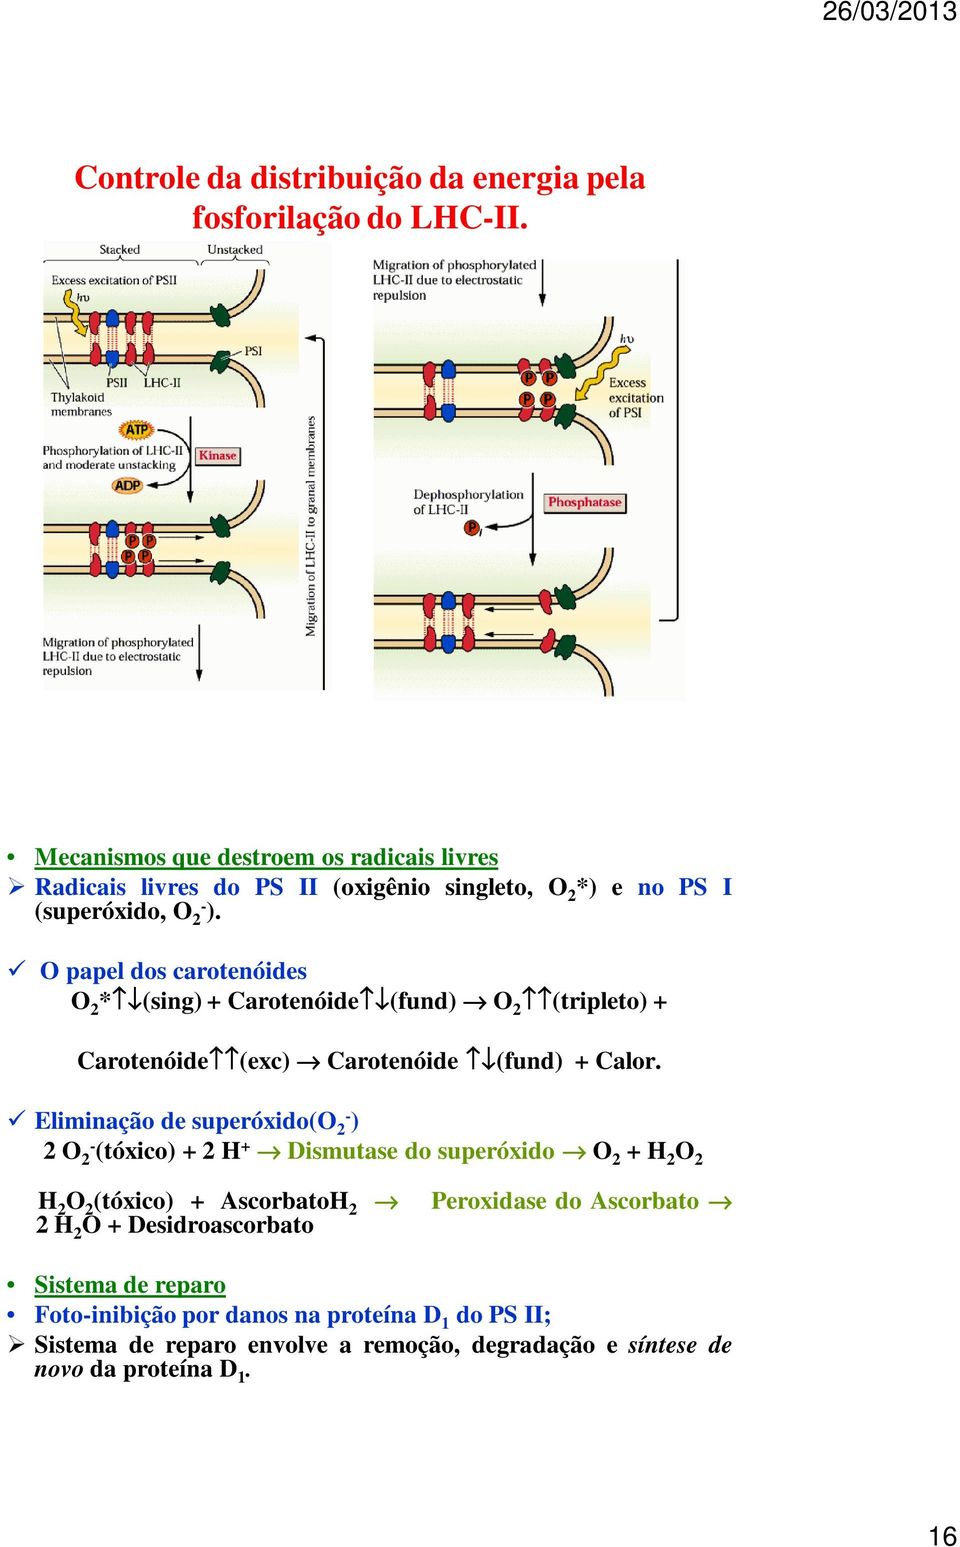 O papel dos carotenóides O 2 * (sing) + Carotenóide (fund) O 2 (tripleto) + Carotenóide (exc) Carotenóide (fund) + Calor.